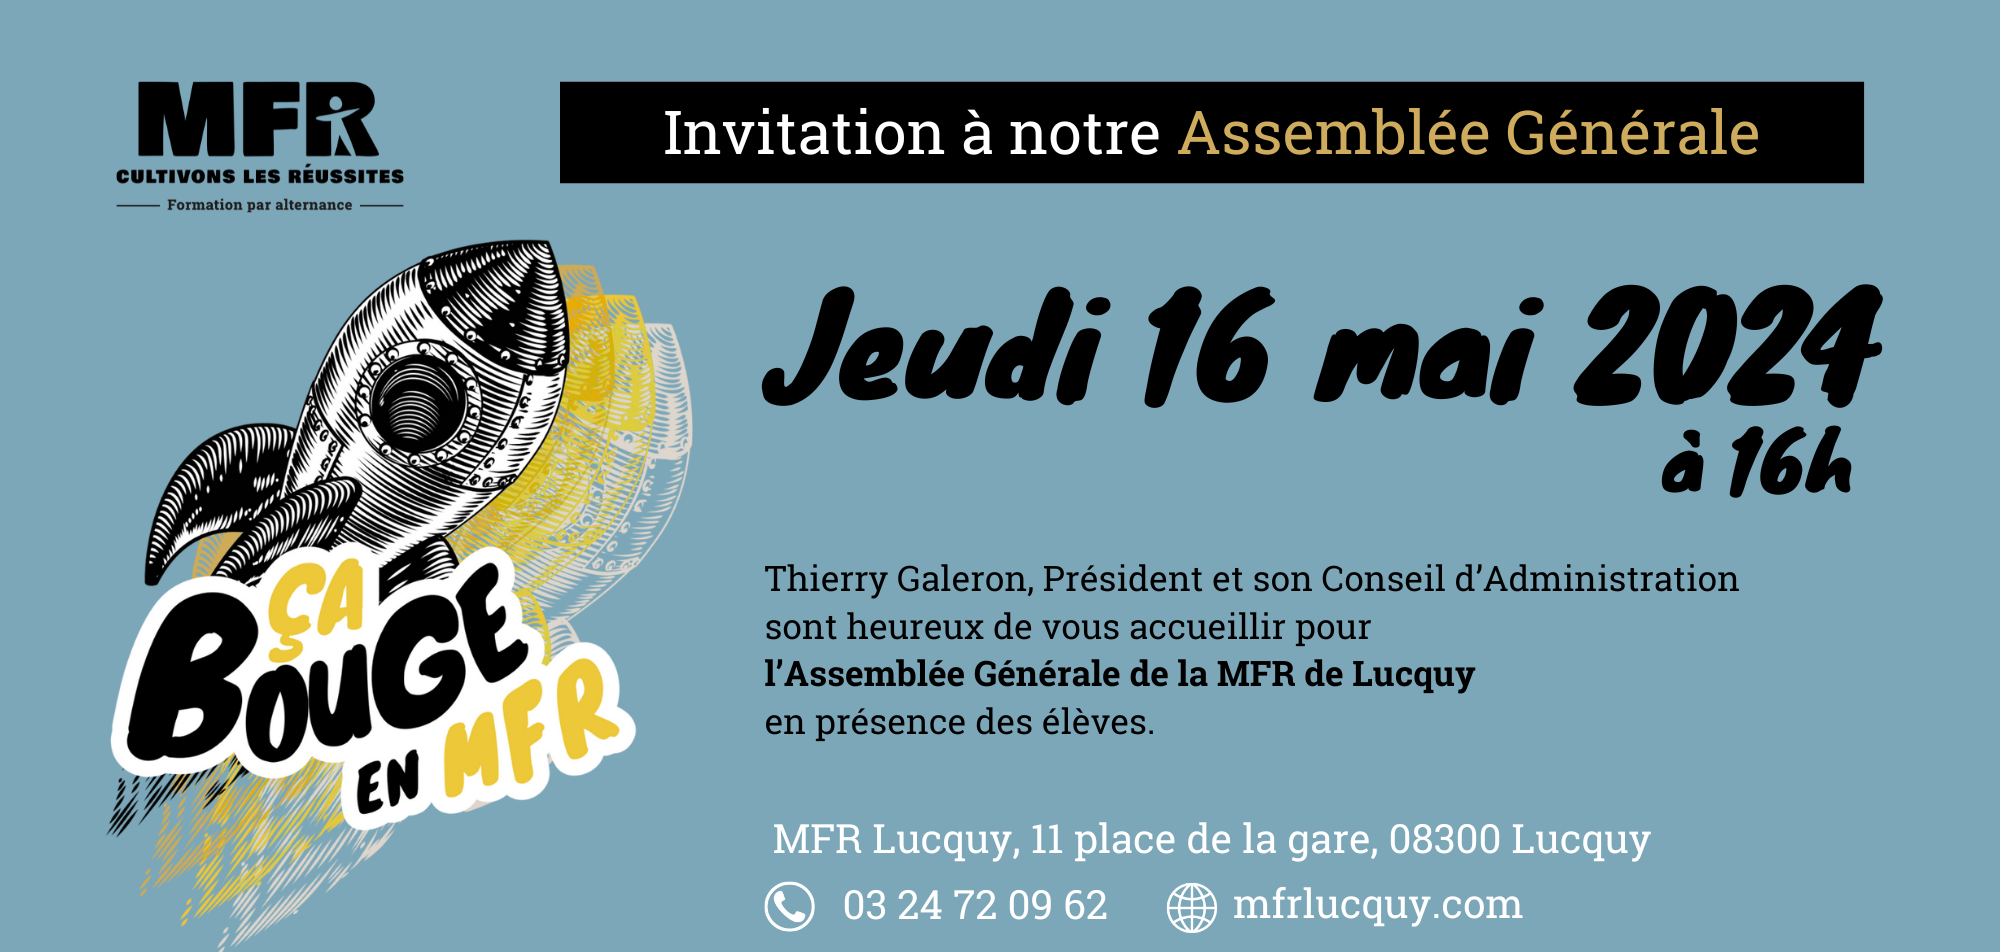 Assemblée Générale mfr lucquy - invitation - 16 mai 2024